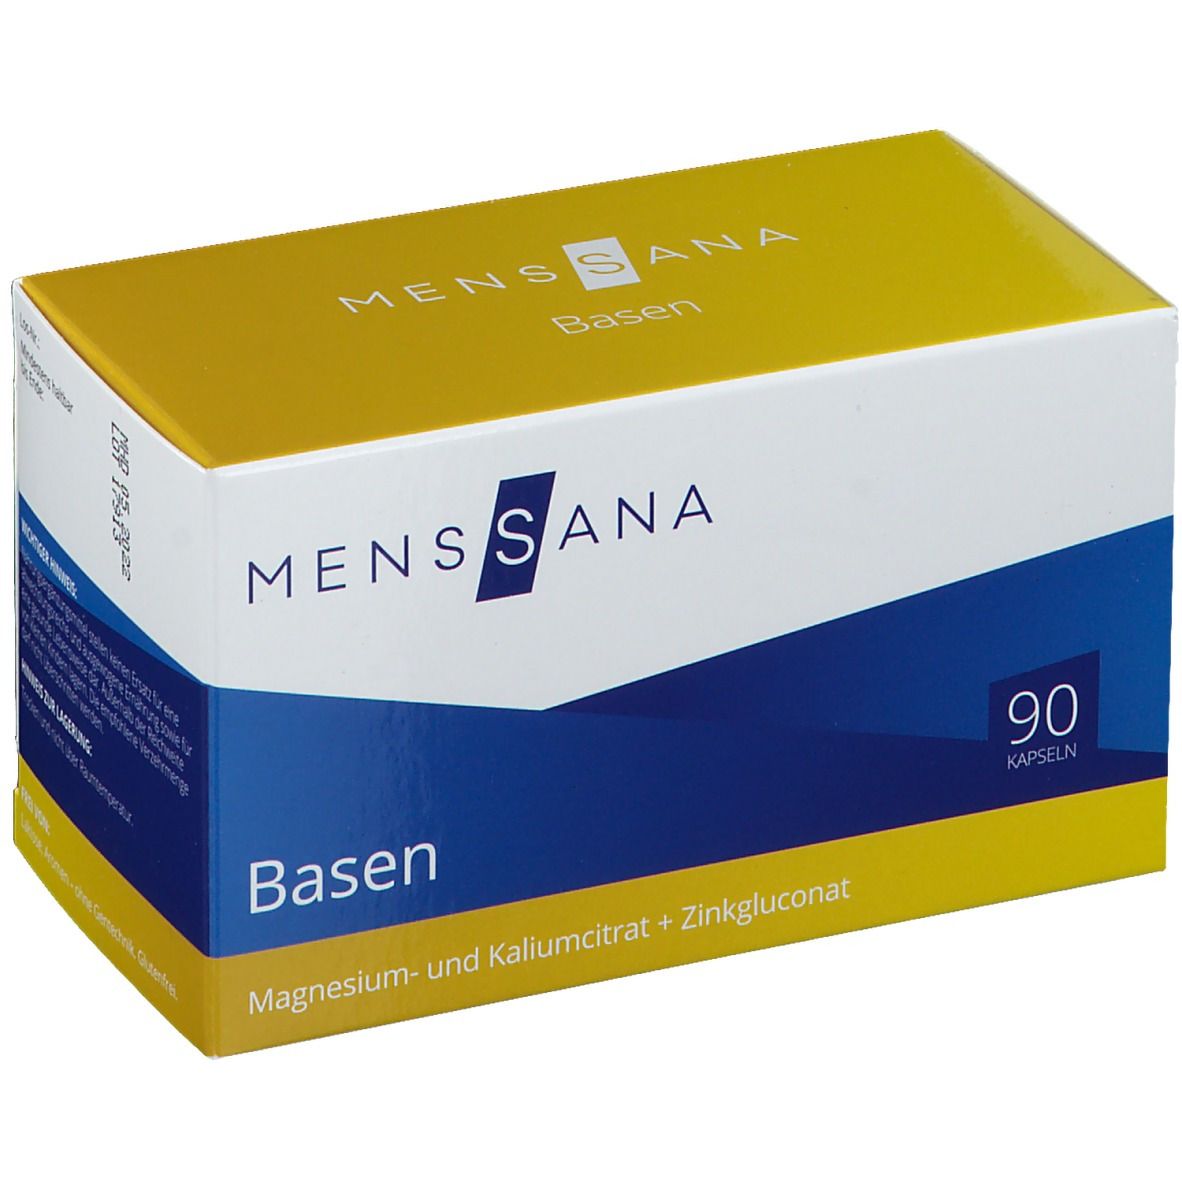 Image of MensSana Basen